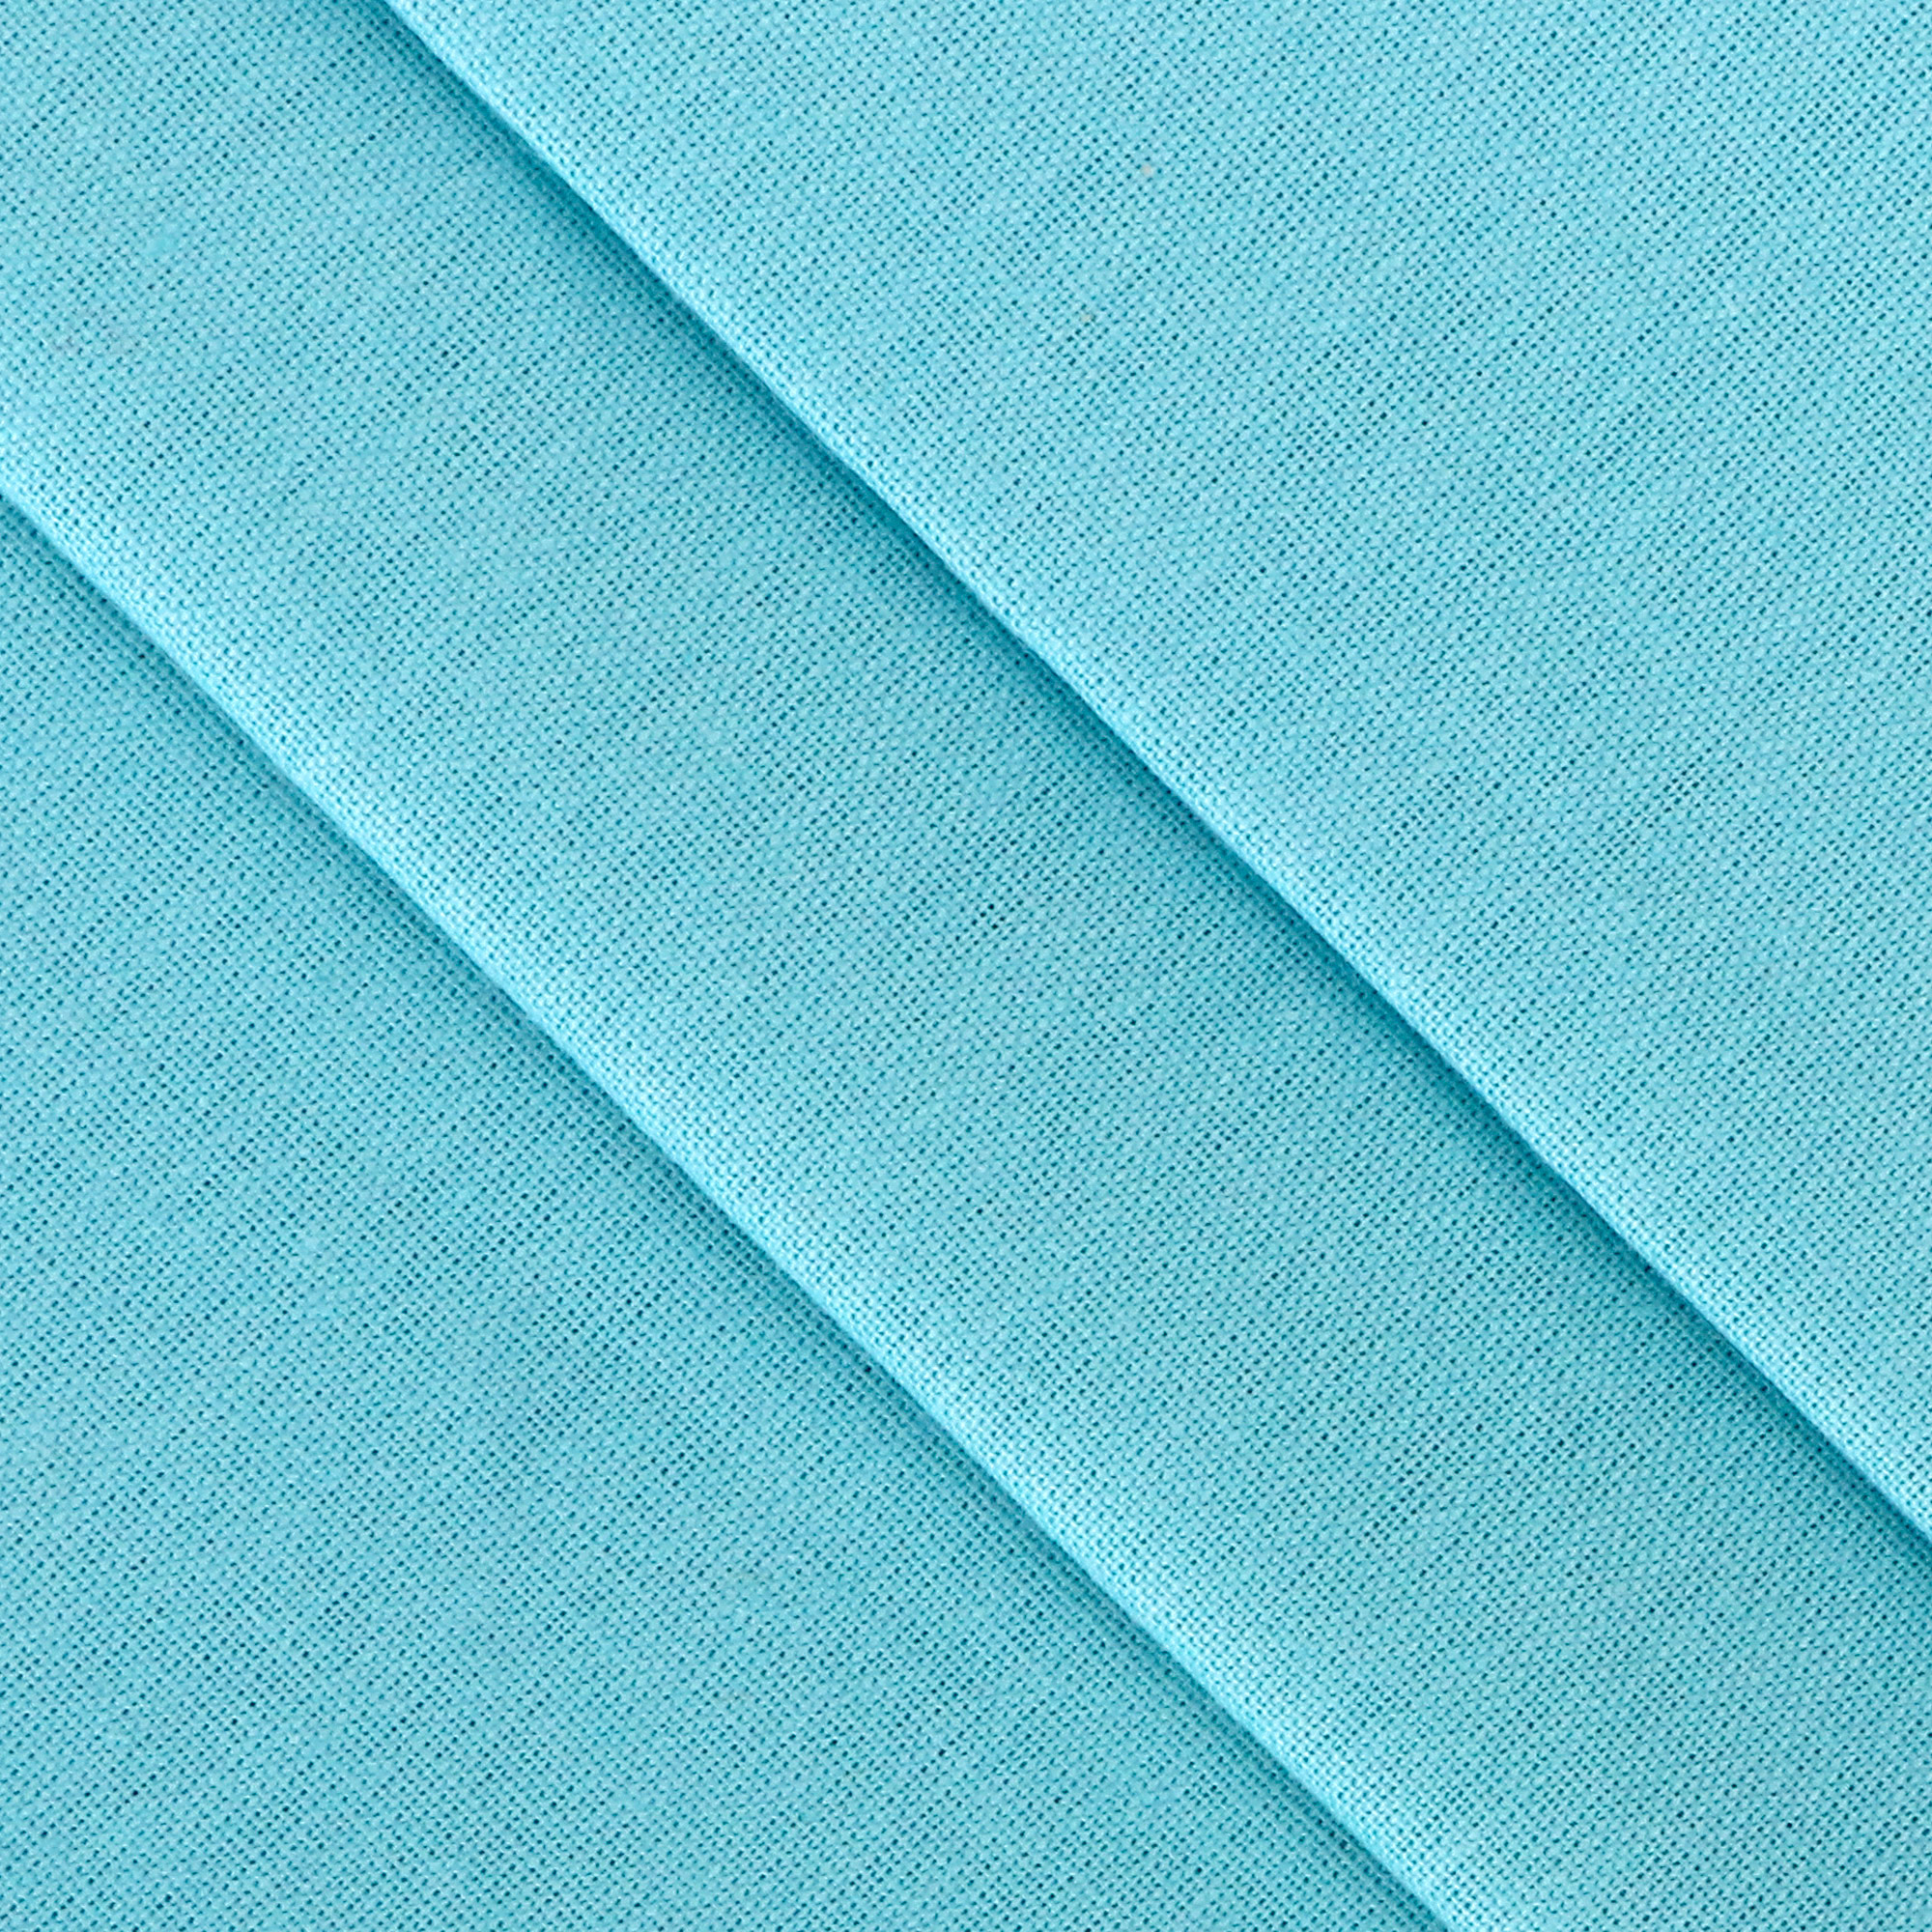 Комплект постельного белья La Besse Ранфорс синий Кинг сайз, размер Кинг сайз - фото 3